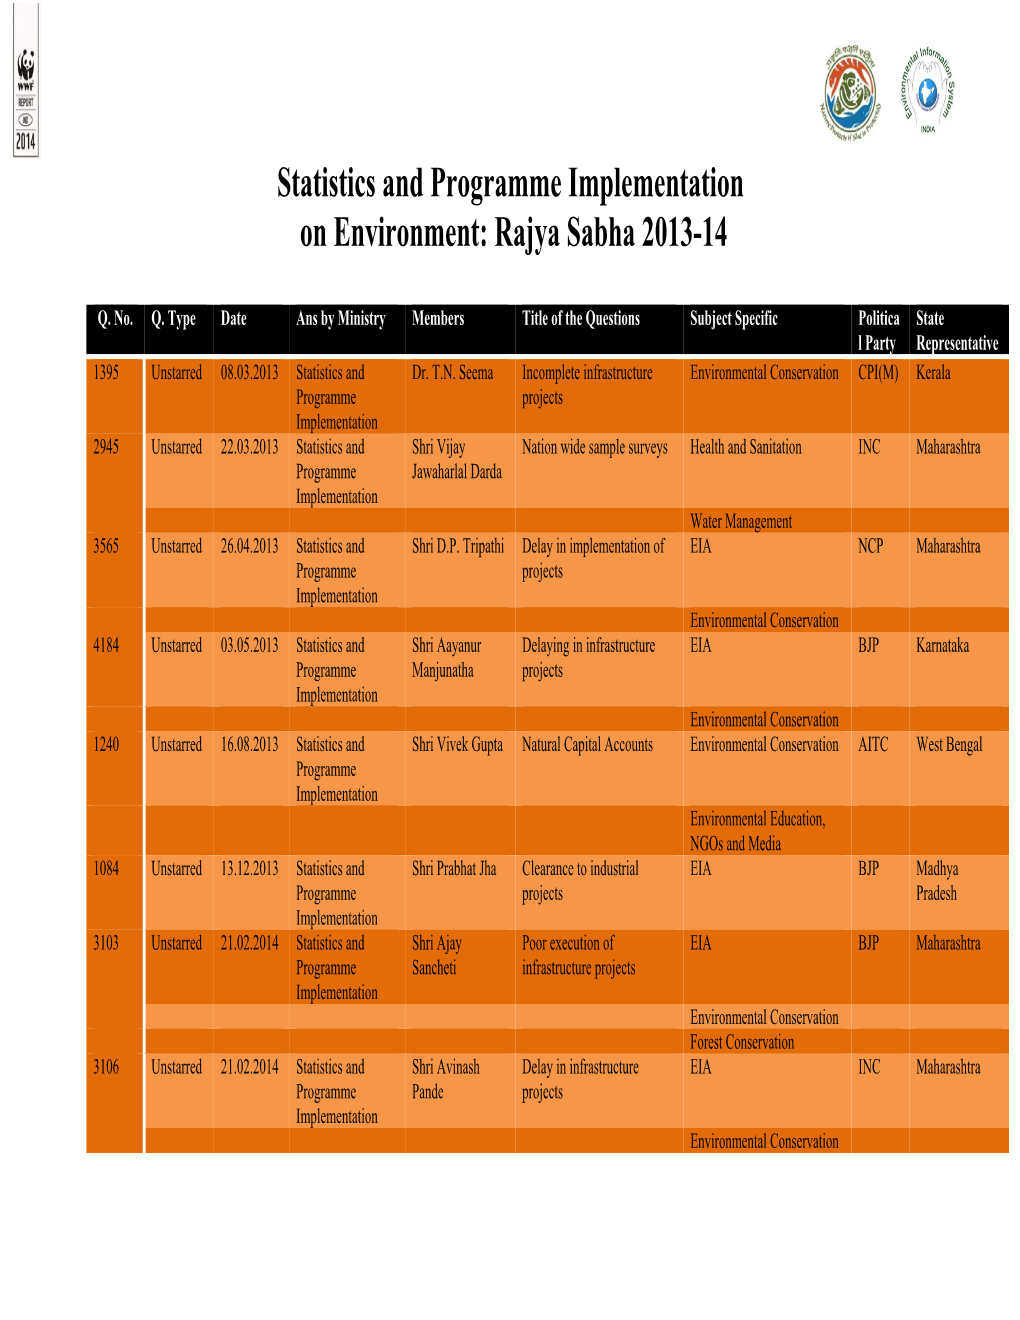 Statistics and Programme Implementation on Environment: Rajya Sabha 2013-14